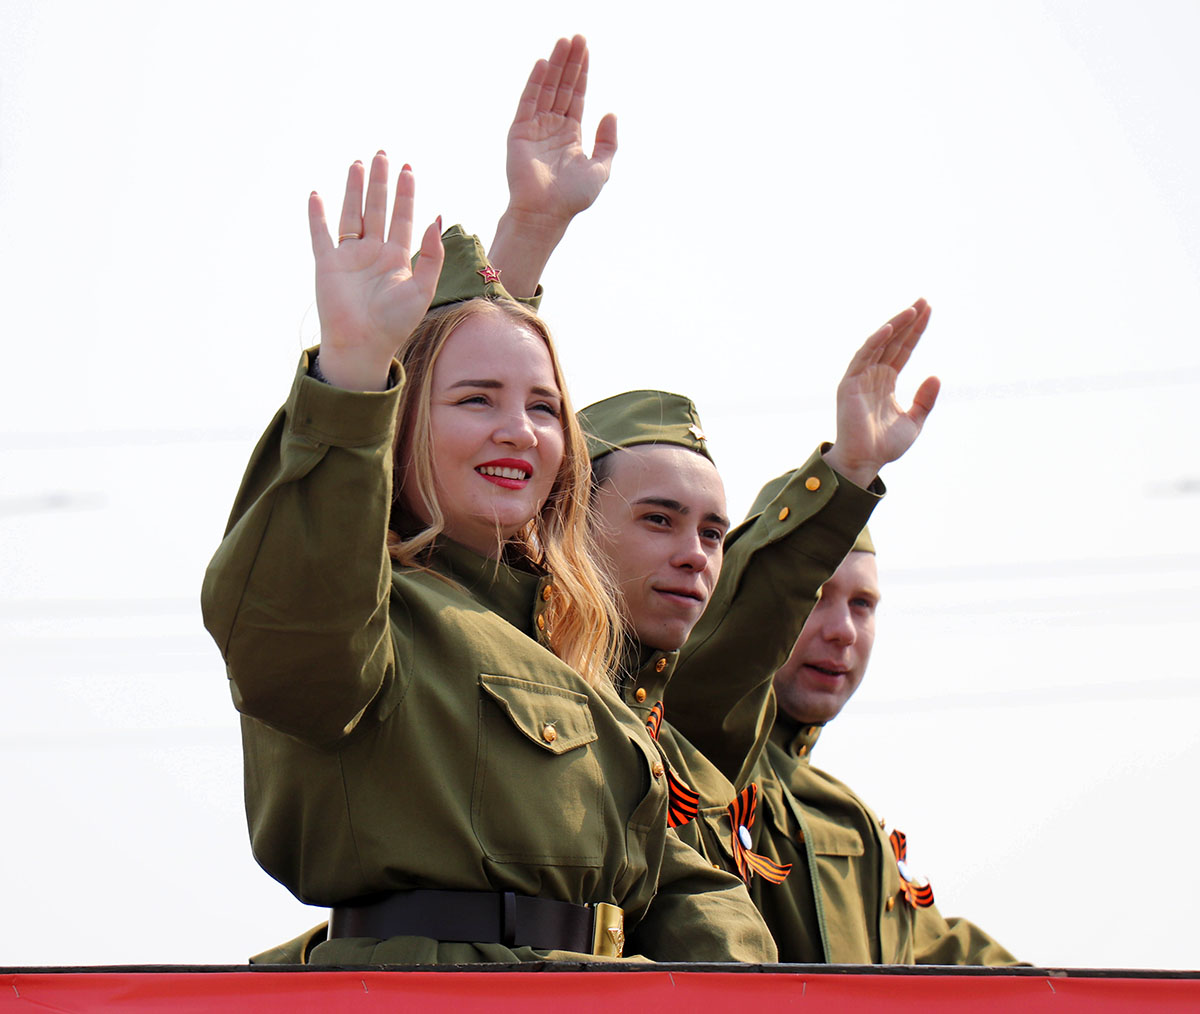 Память в наших сердцах. Масштабным парадом Магнитогорск отметил 78-летие Великой Победы